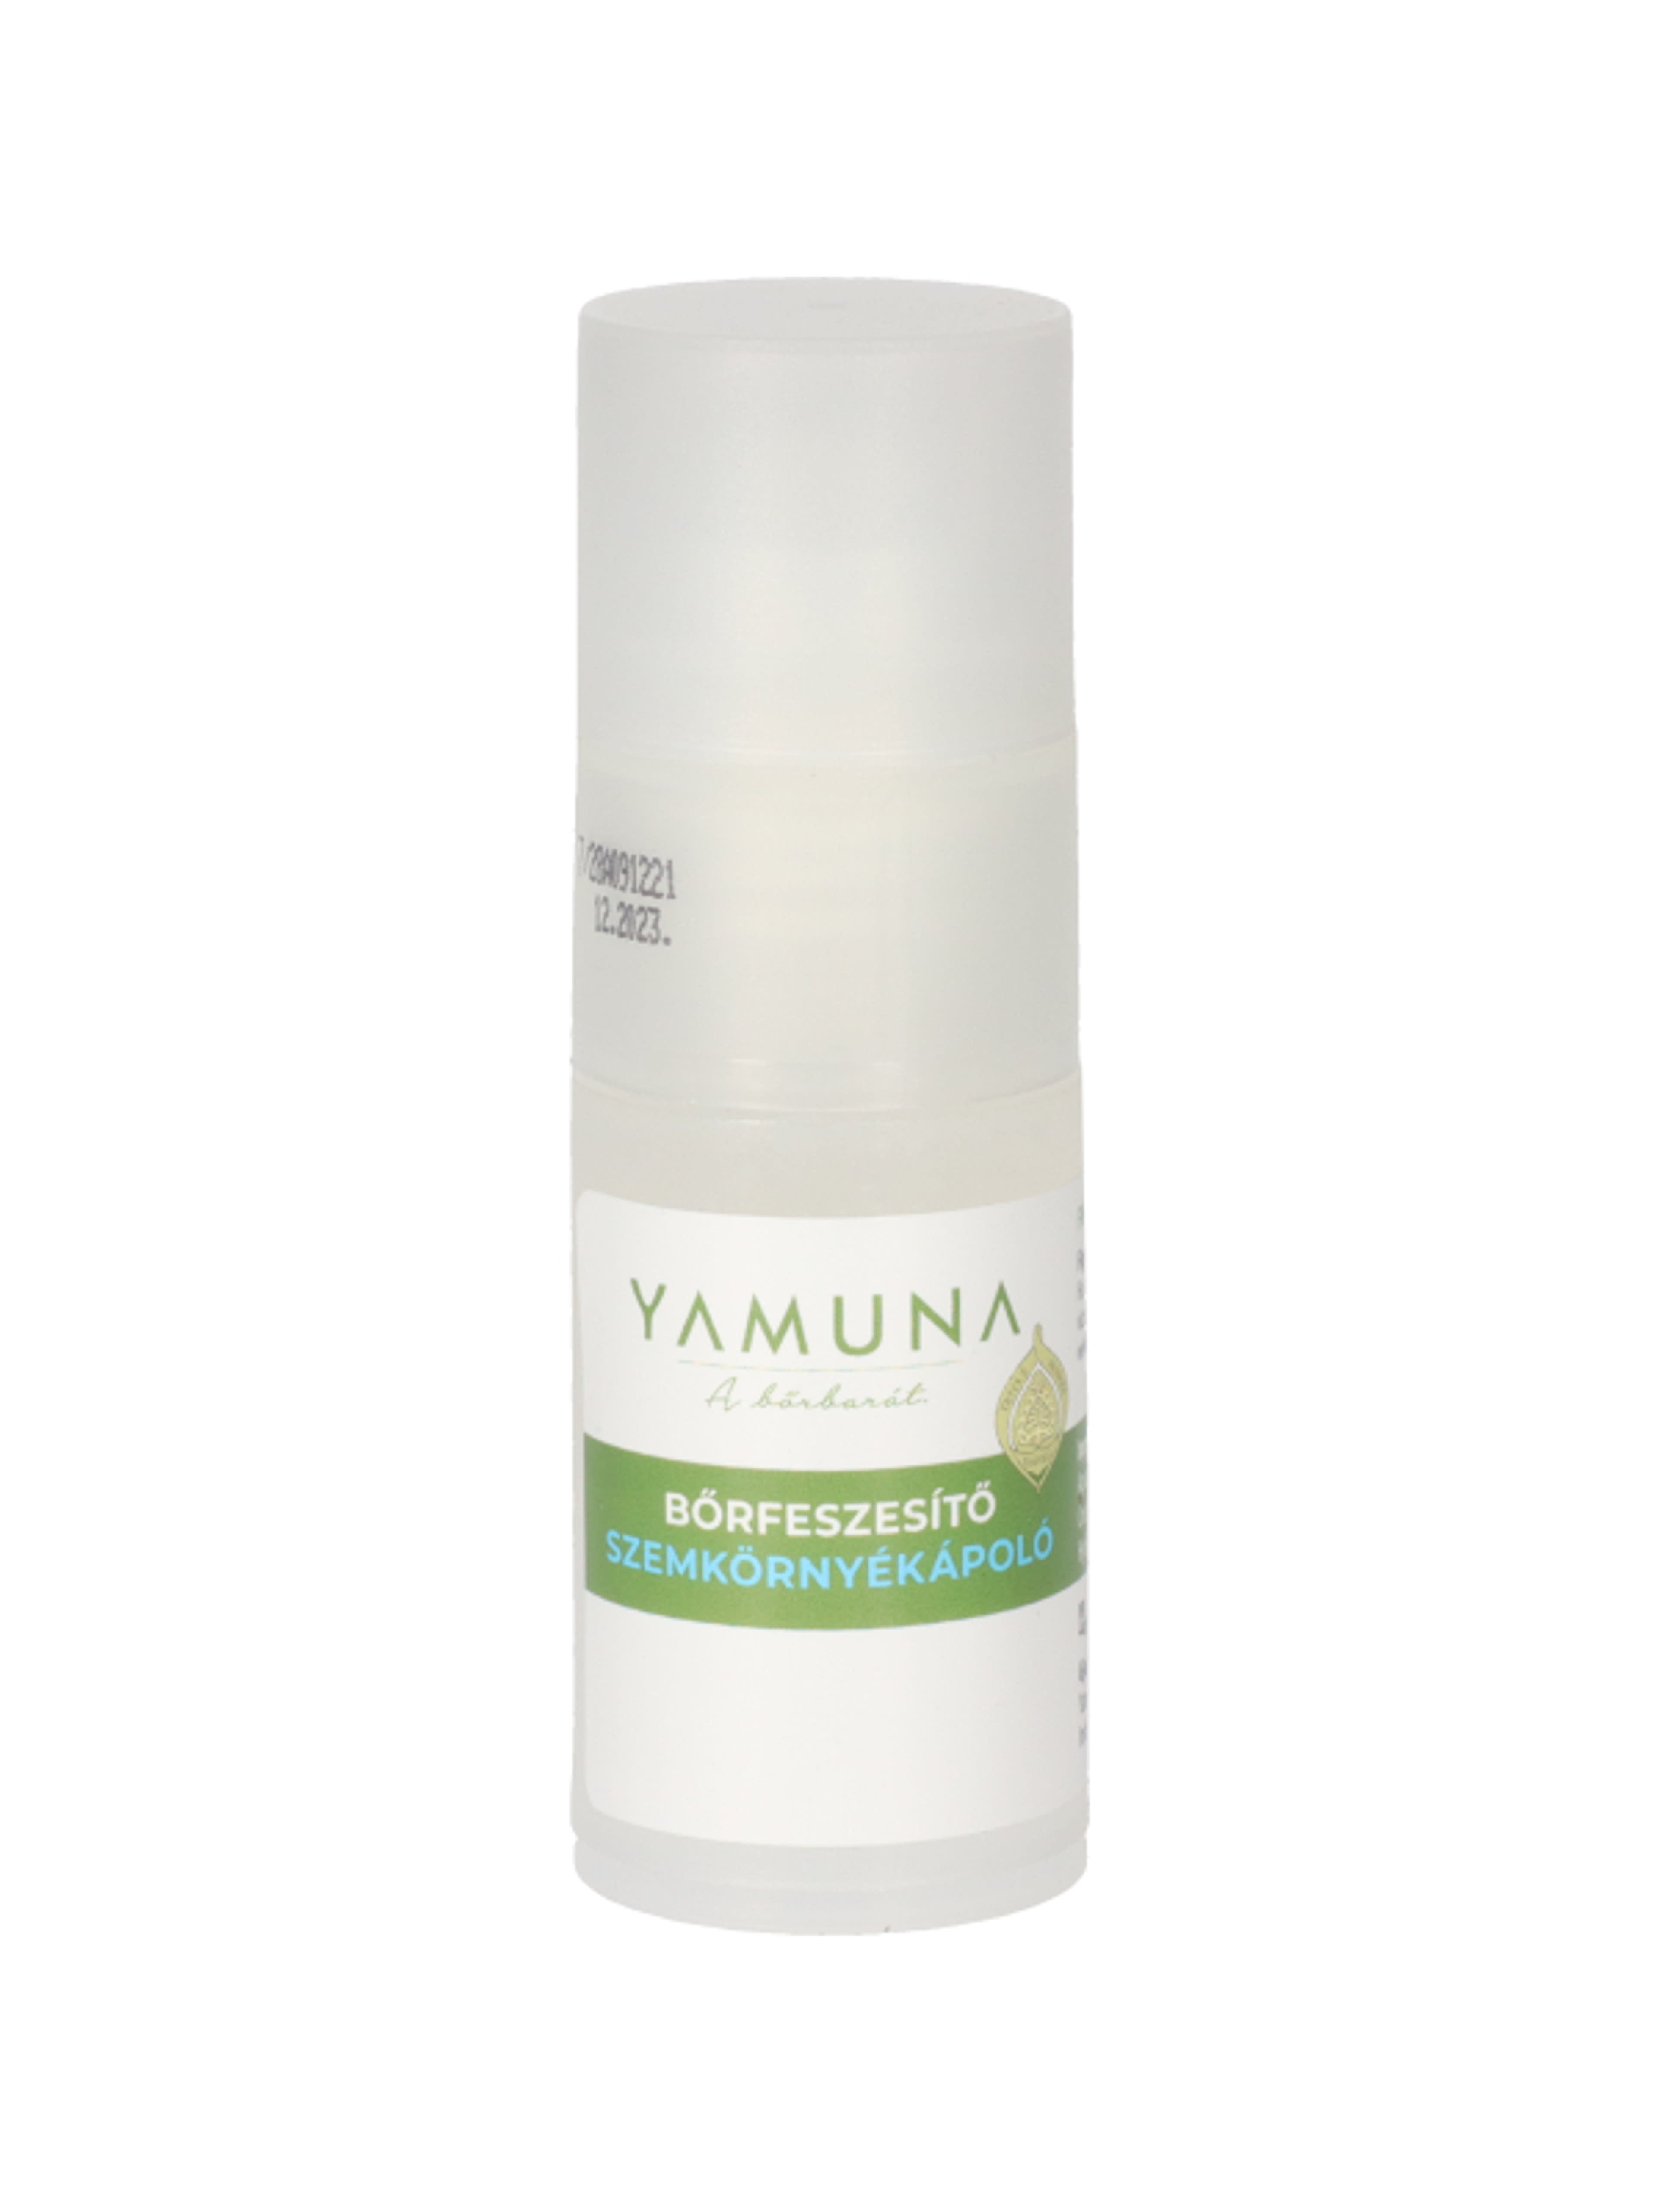 Yamuna bőrfeszesítő szemkörnyékápoló - 15 ml-1